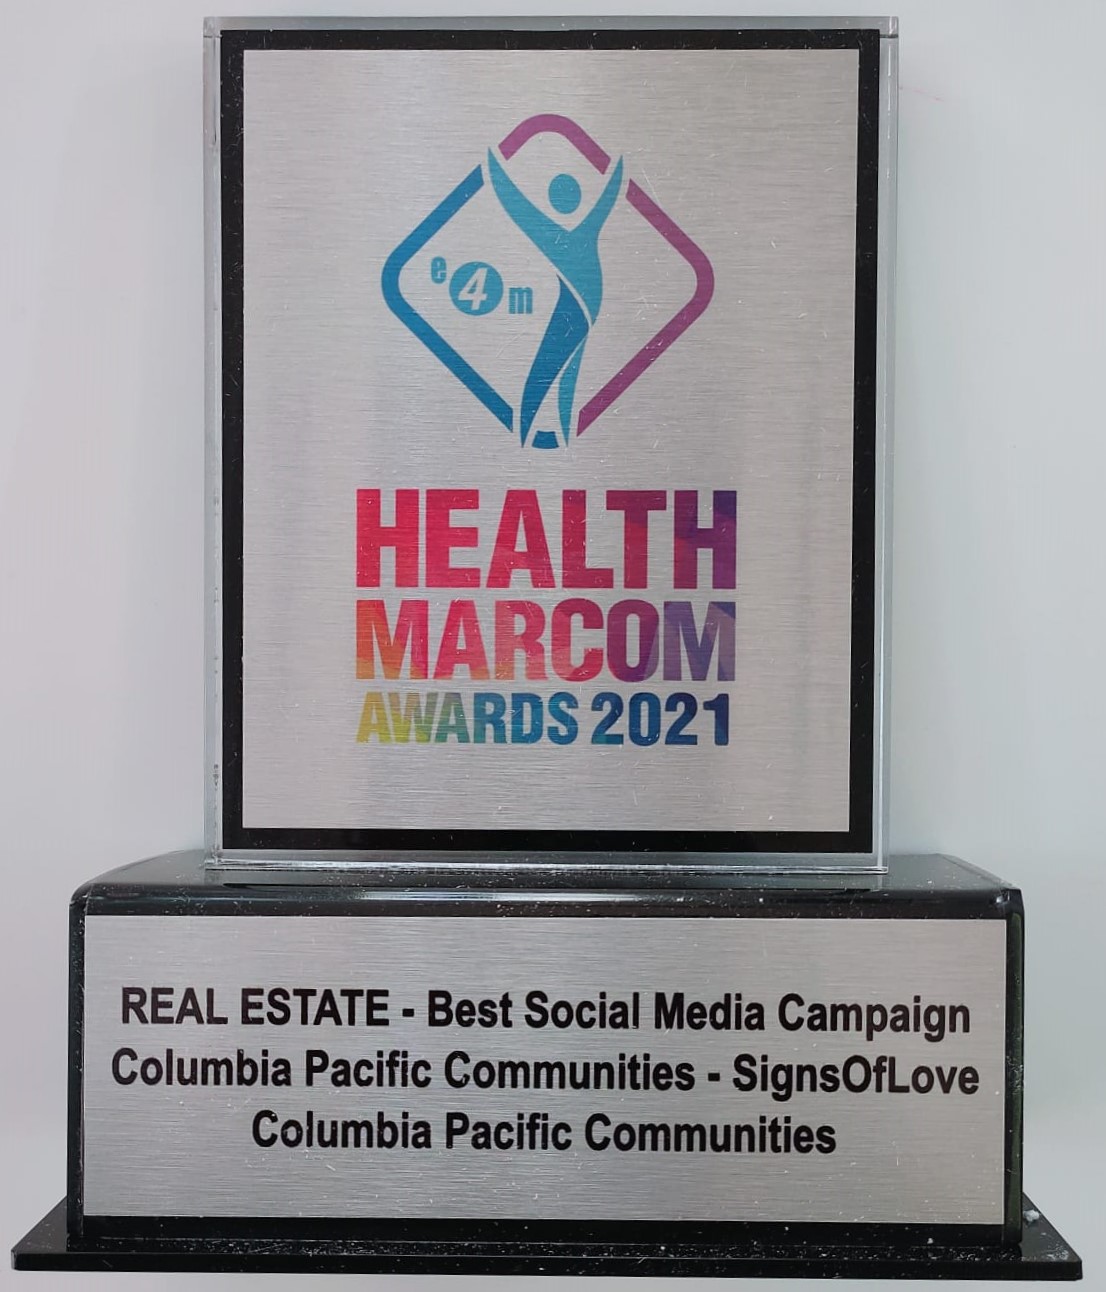 E4M Health & Marcom Awards 2021